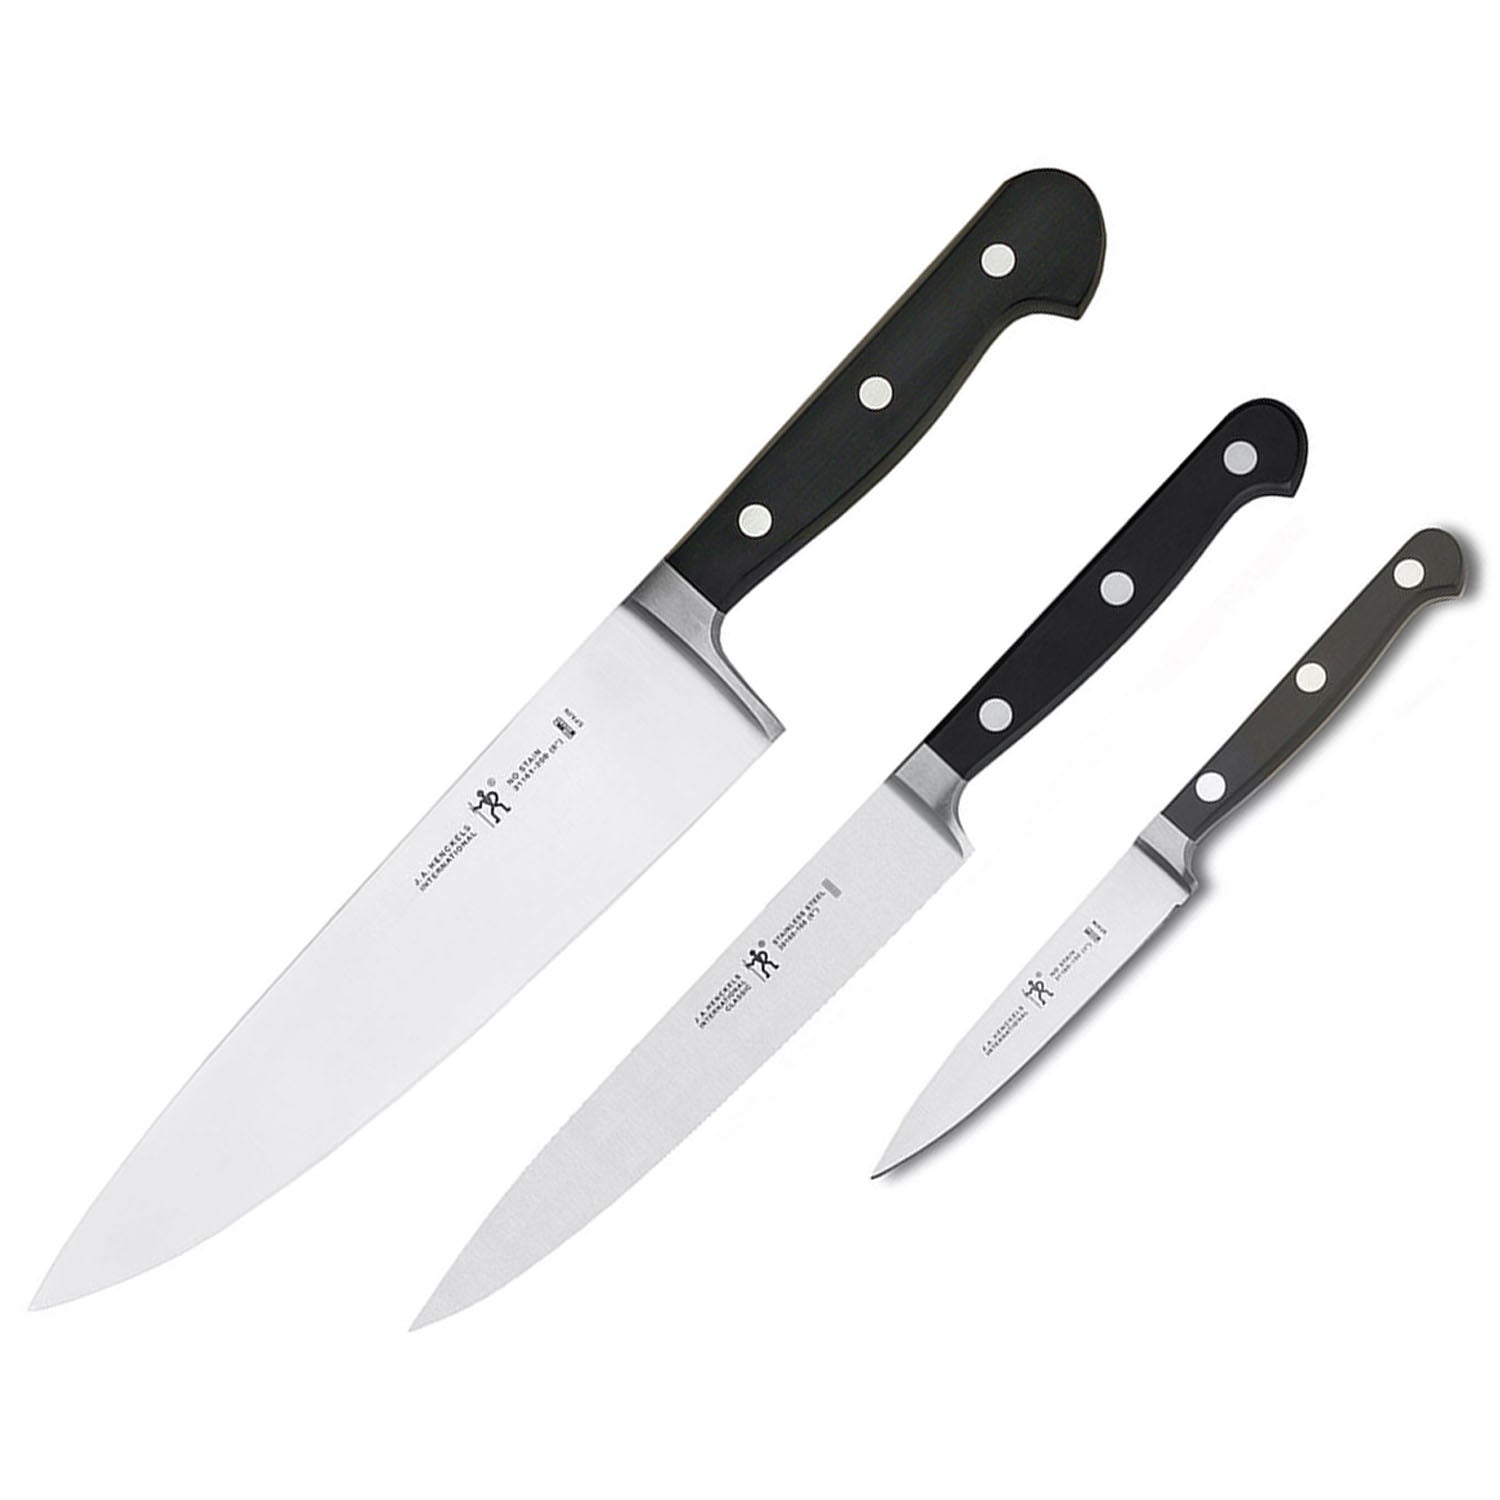 All-Clad Starter Knives, Set of 3